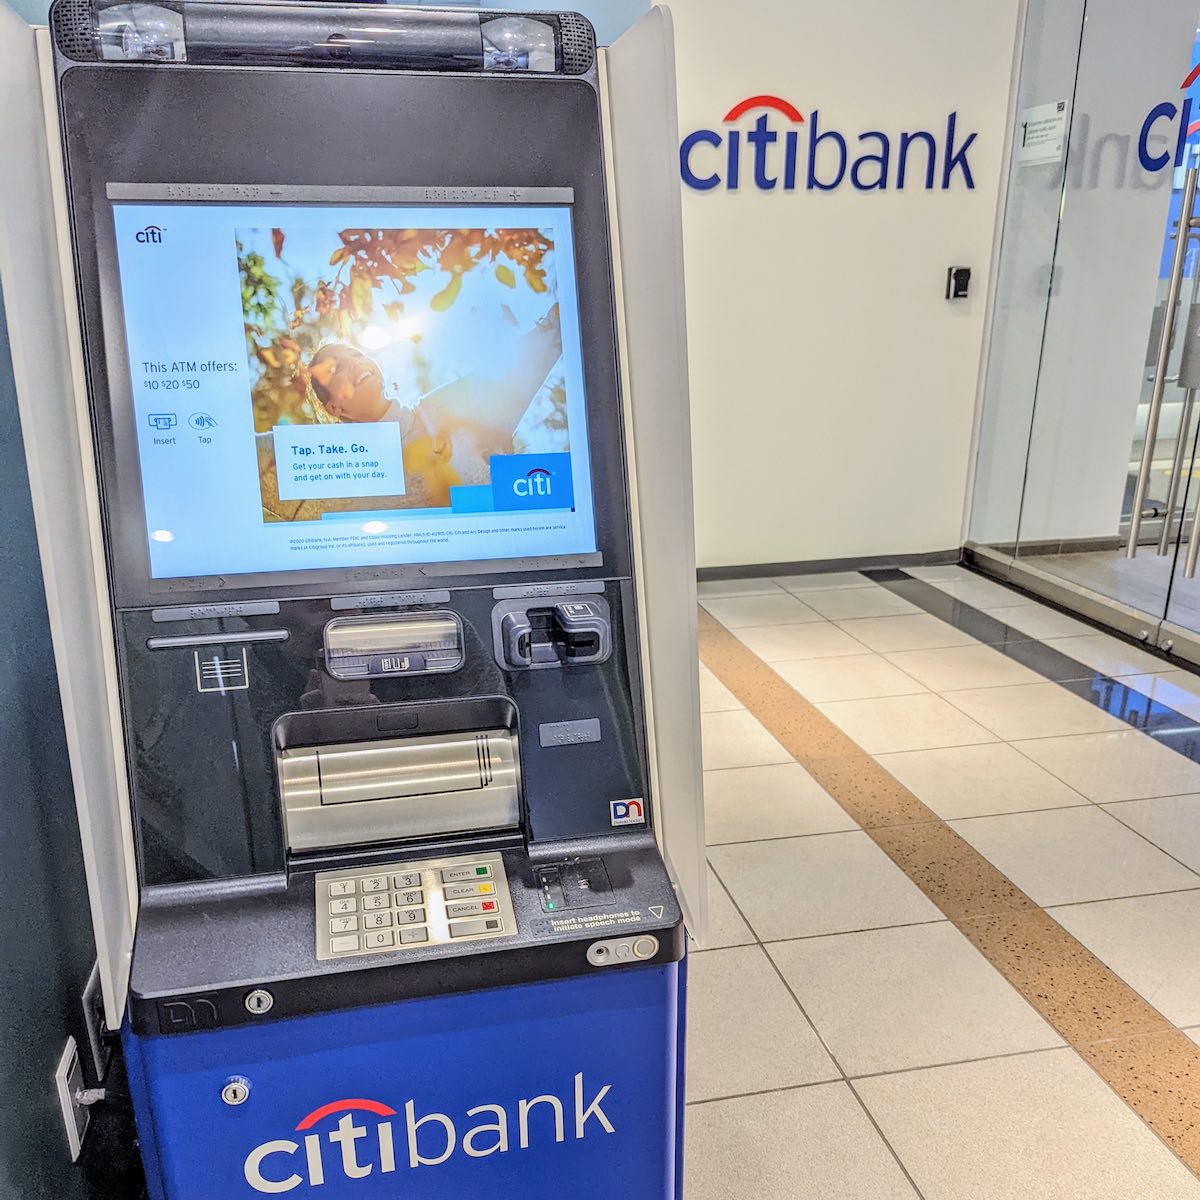 The Citi ATM.